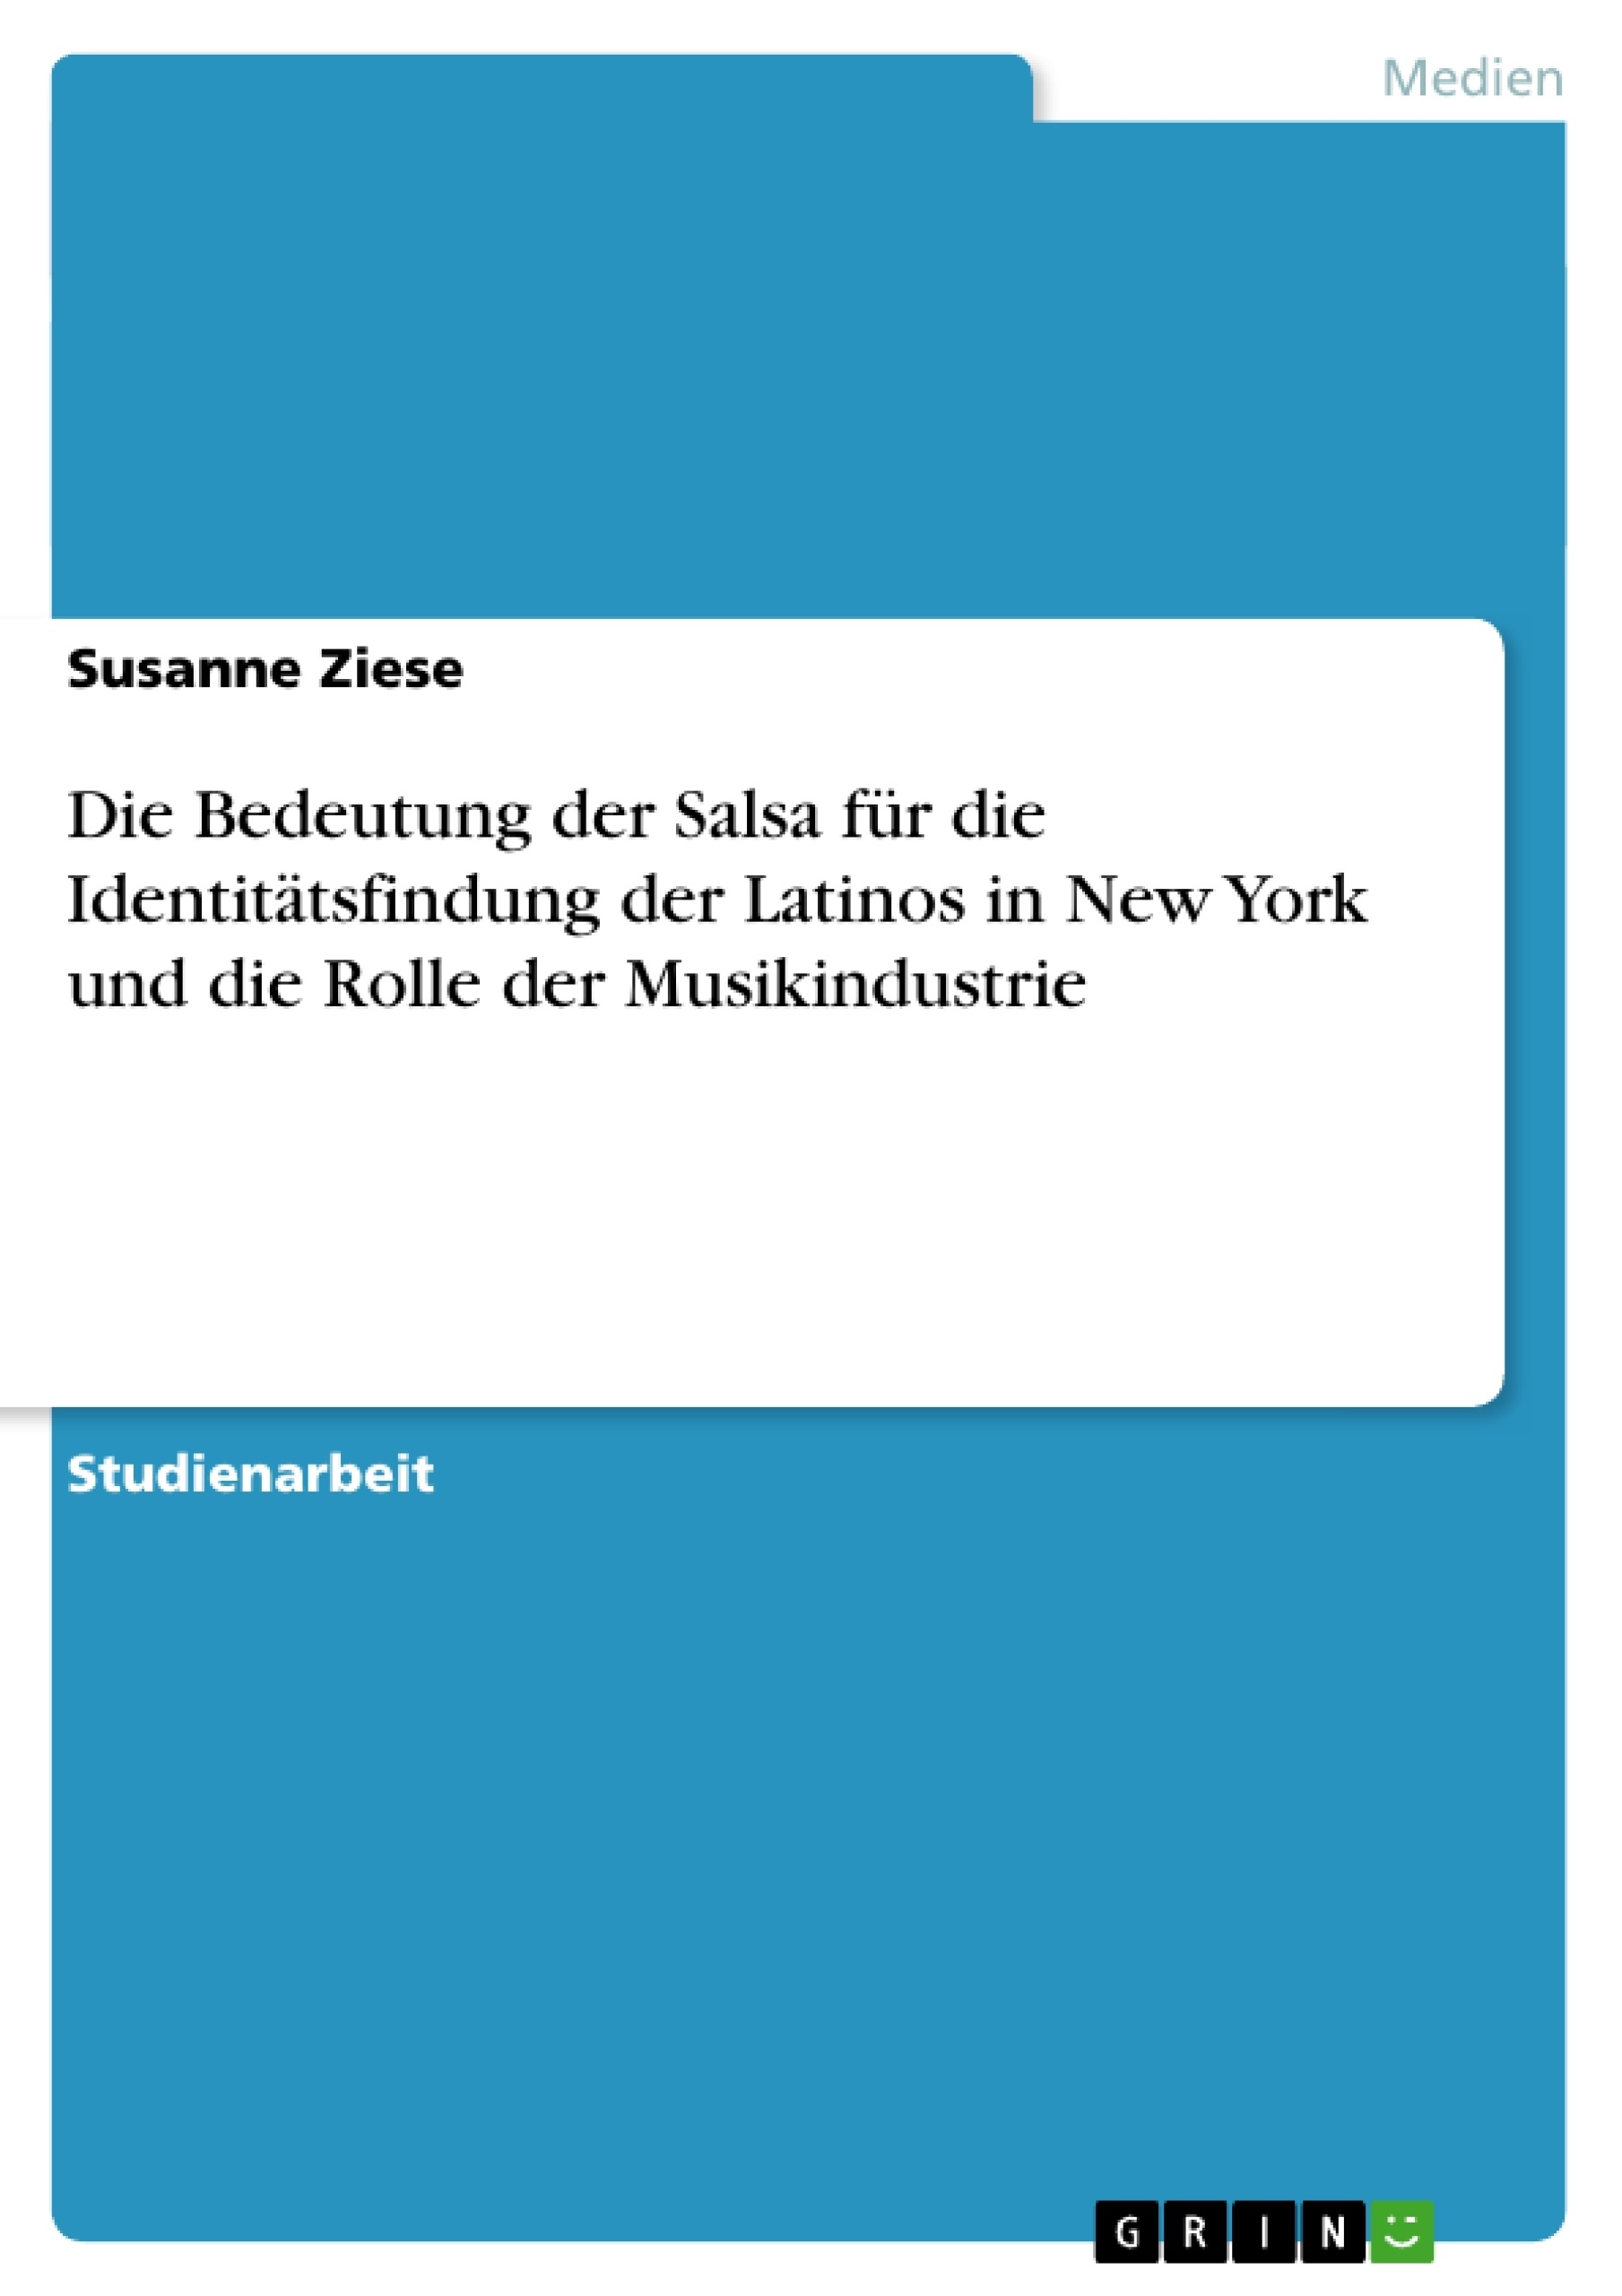 Título: Die Bedeutung der Salsa für die Identitätsfindung der Latinos in New York und die Rolle der Musikindustrie